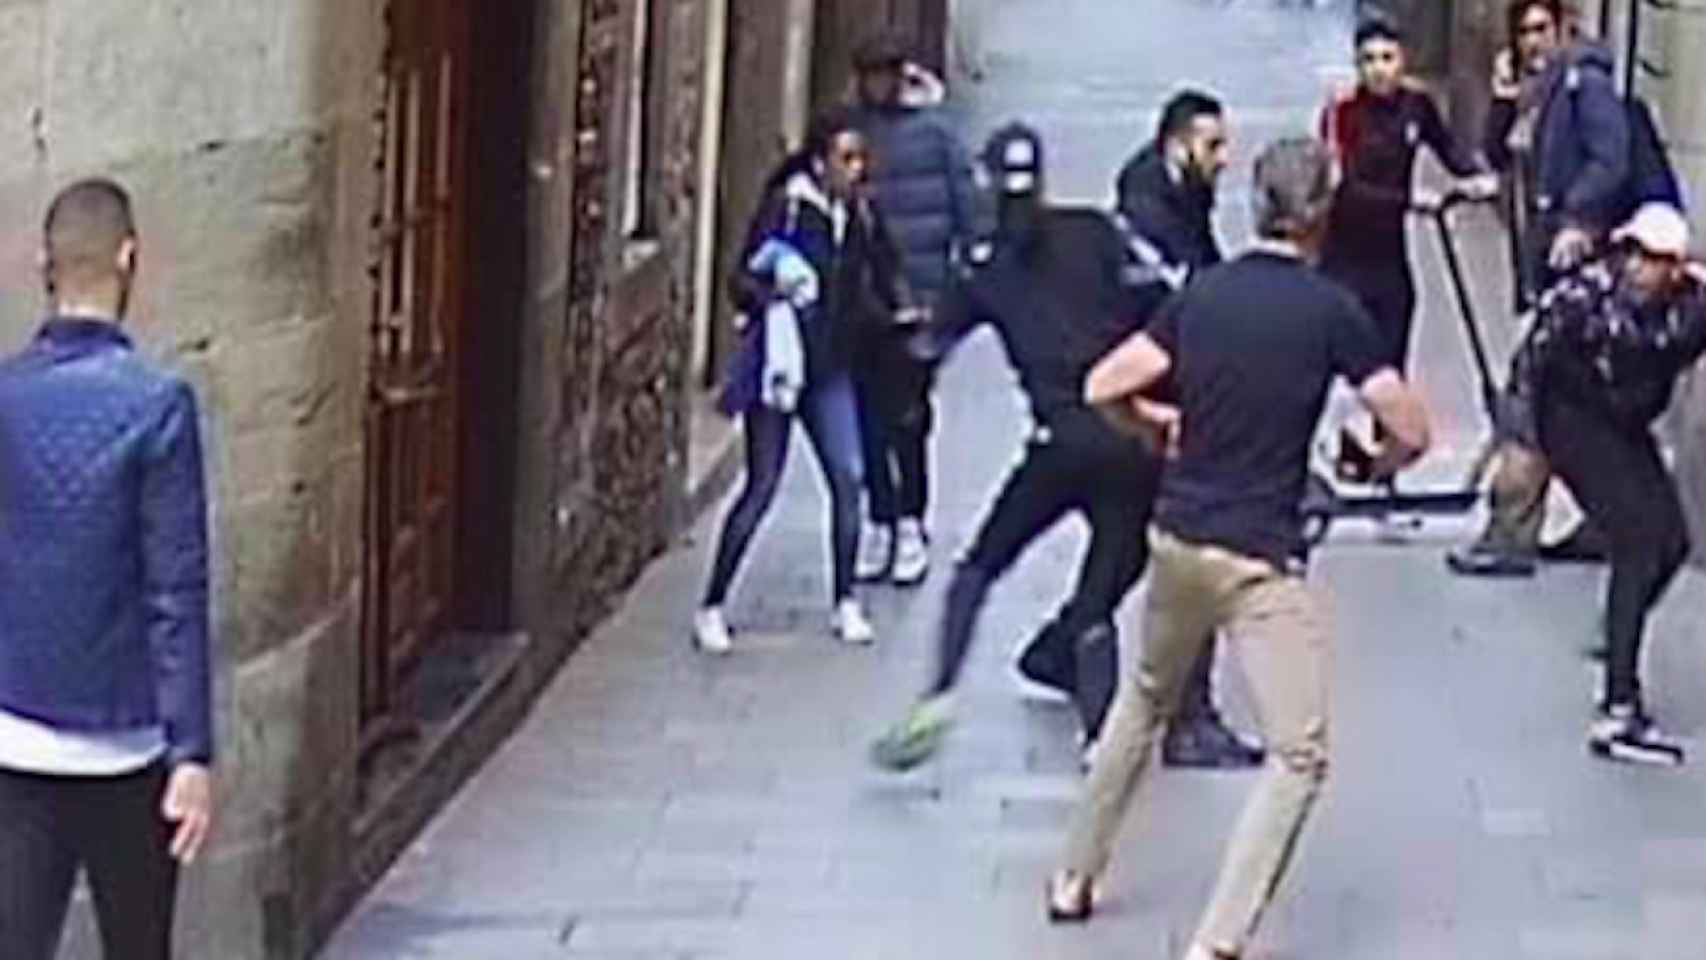 Robo con violencia en el barrio del Gòtic de Barcelona